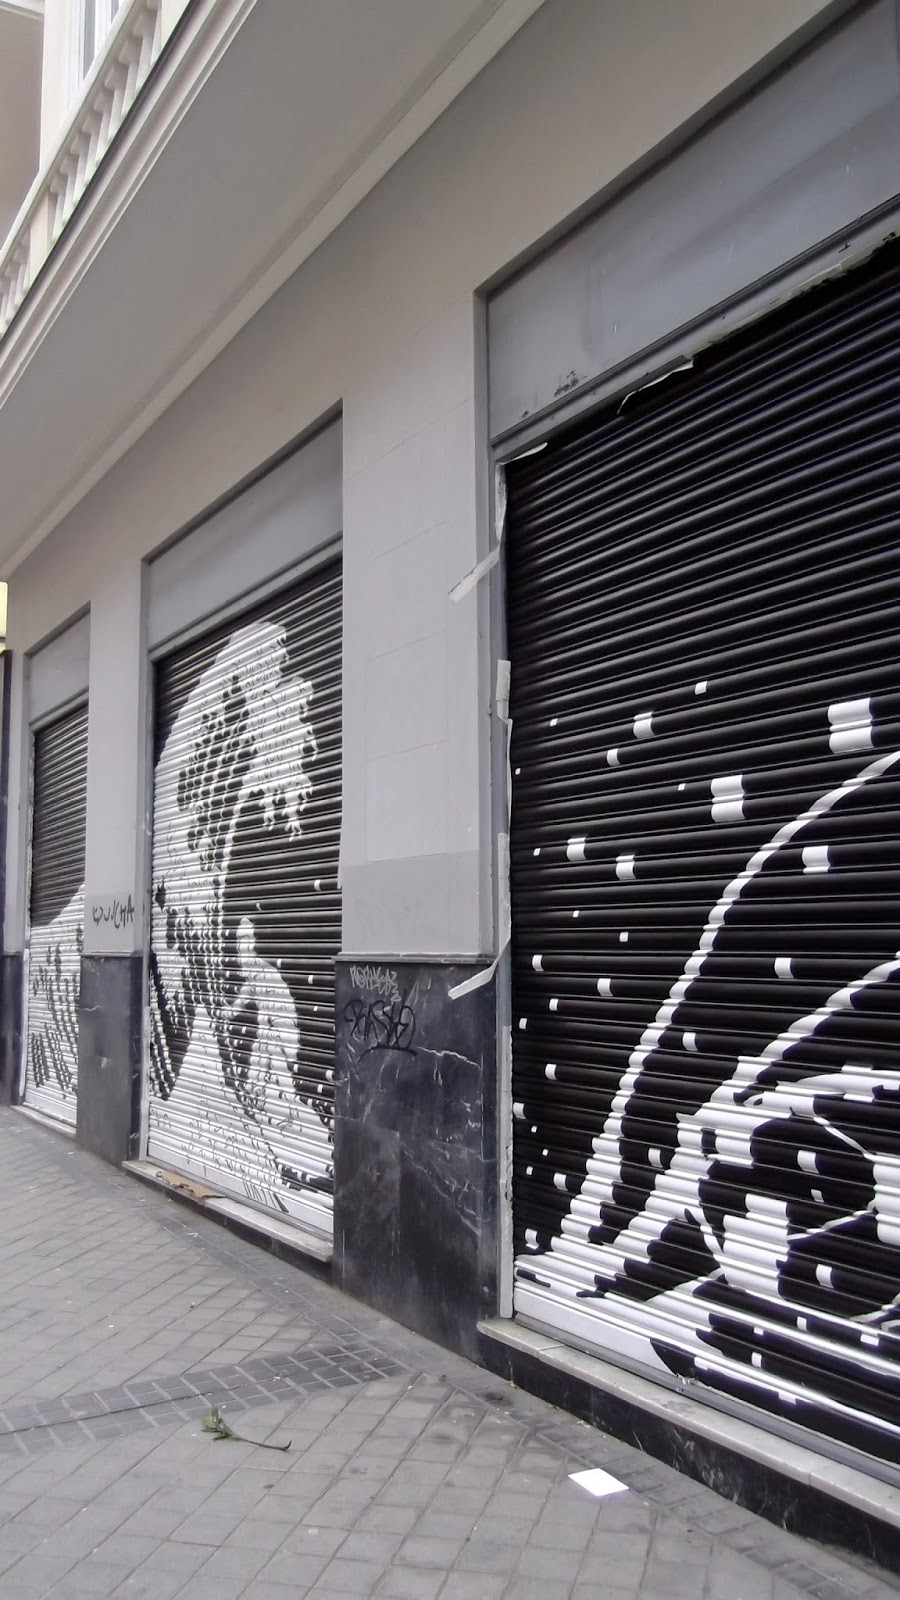 "liquitex", "ISDI", "MURAL", "Calle Viriato", Street art"